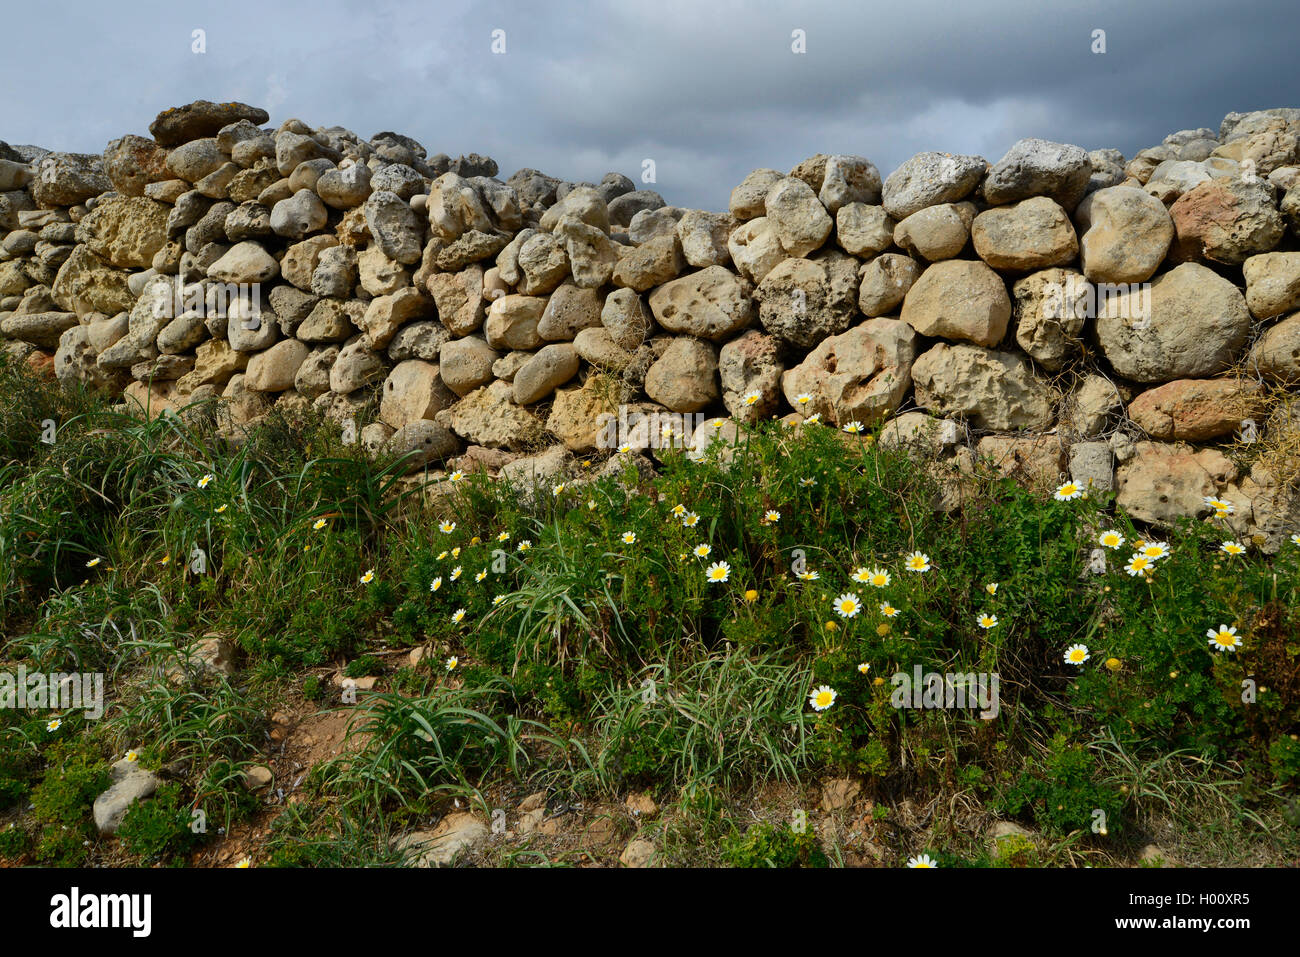 Trocken - Mauer aus Stein gebaut mit MarÞs Steine, kurz vor einem Gewitter, Spanien, Balearen, Menorca Stockfoto